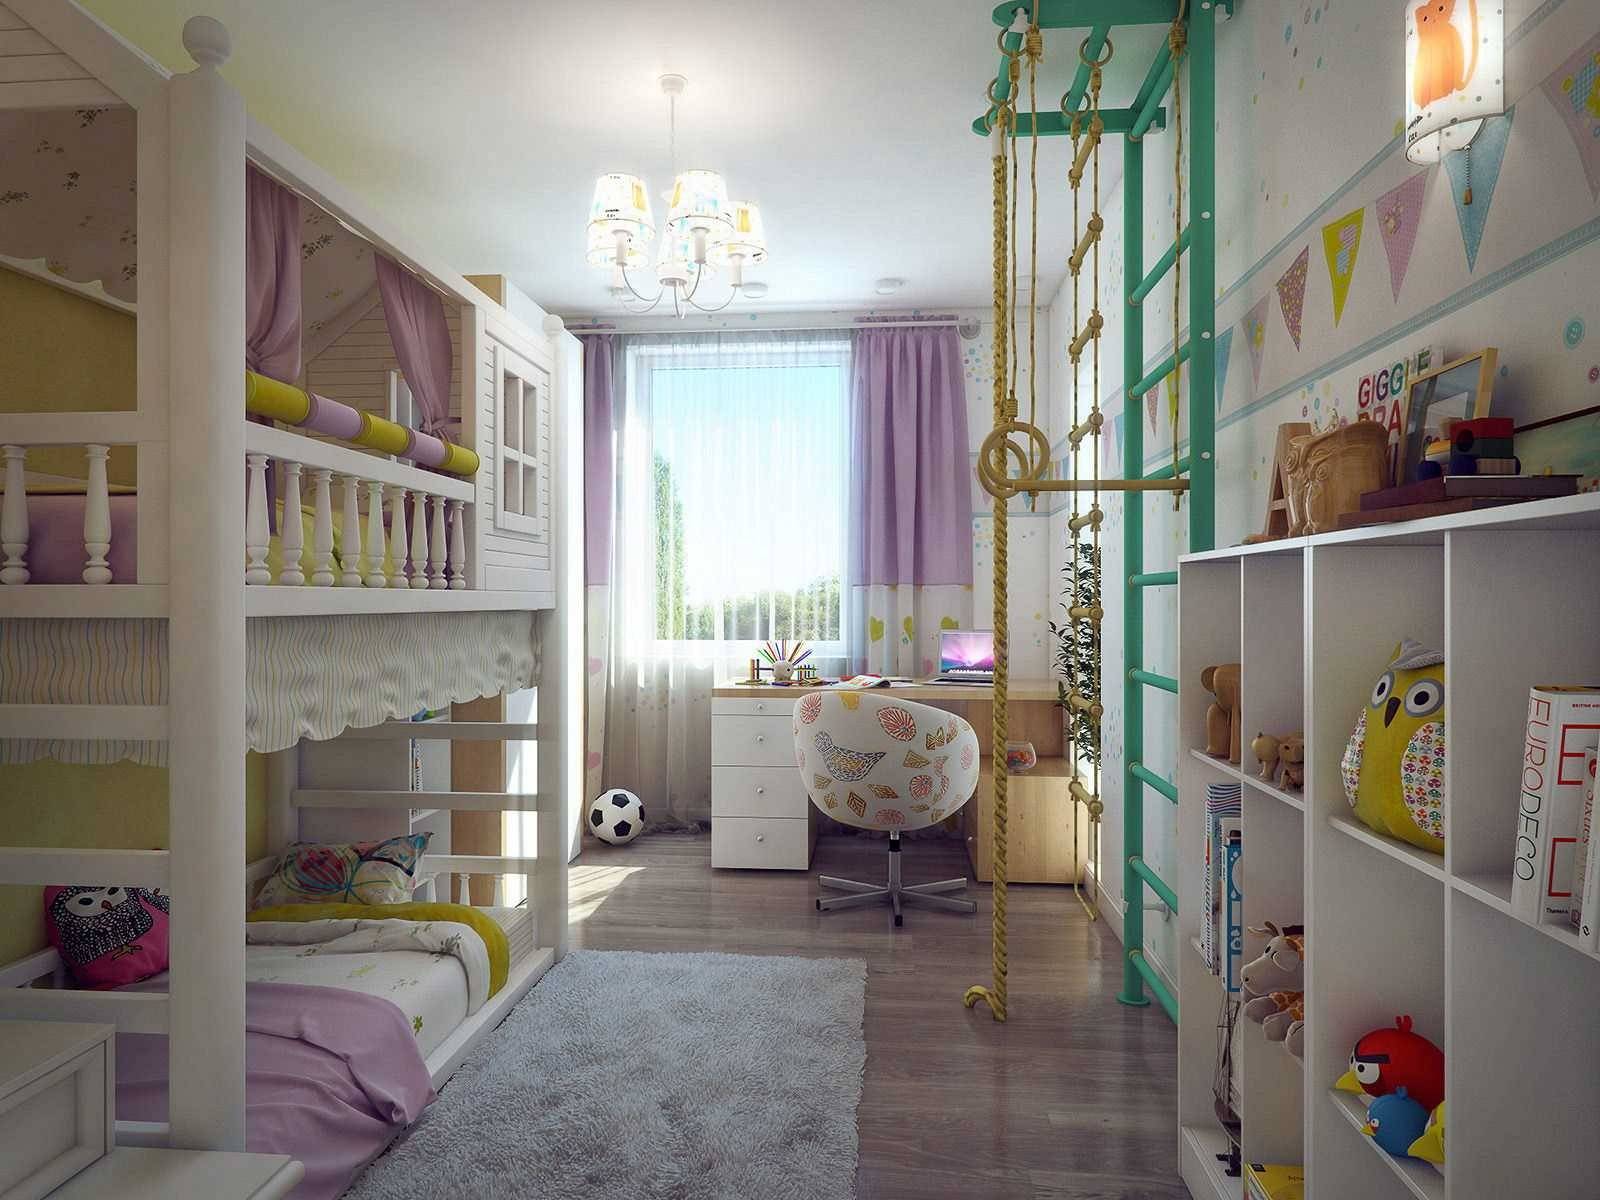 Дизайн детской комнаты 12 кв м для мальчика (20 фото) - варианты интерьера